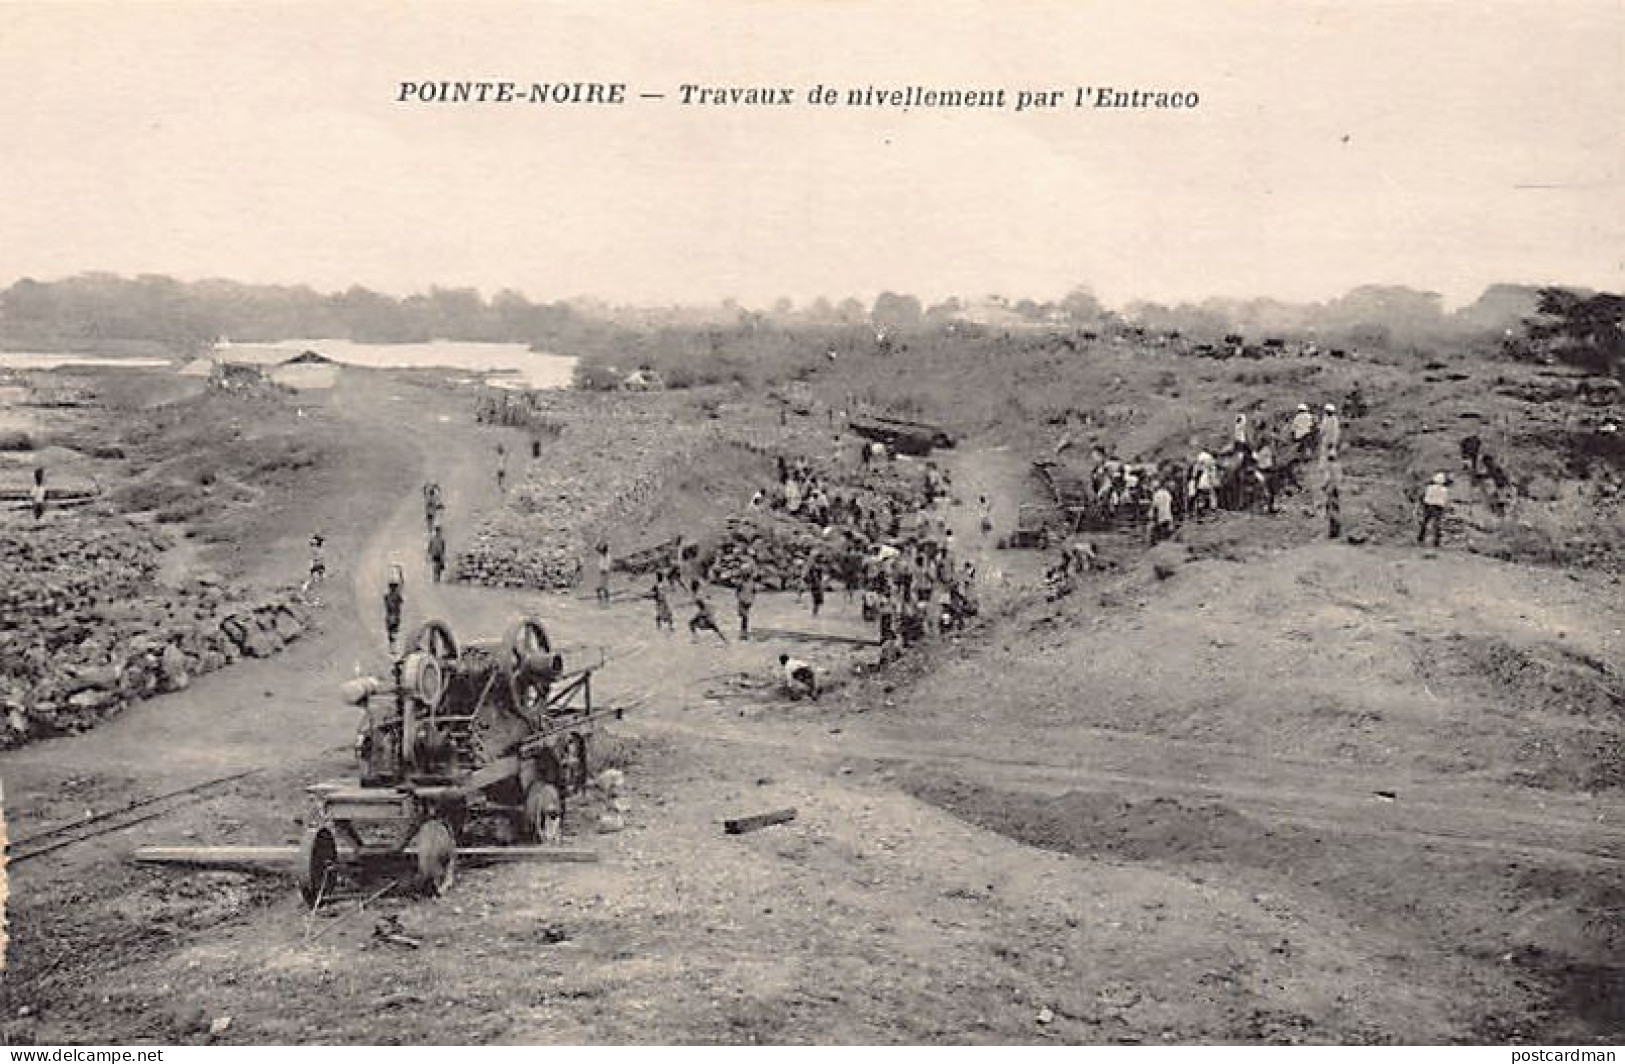 Congo - POINTE NOIRE - Travaux De Nivellement - Chemin De Fer Congo-Océa - Ed. Entraco  - Pointe-Noire